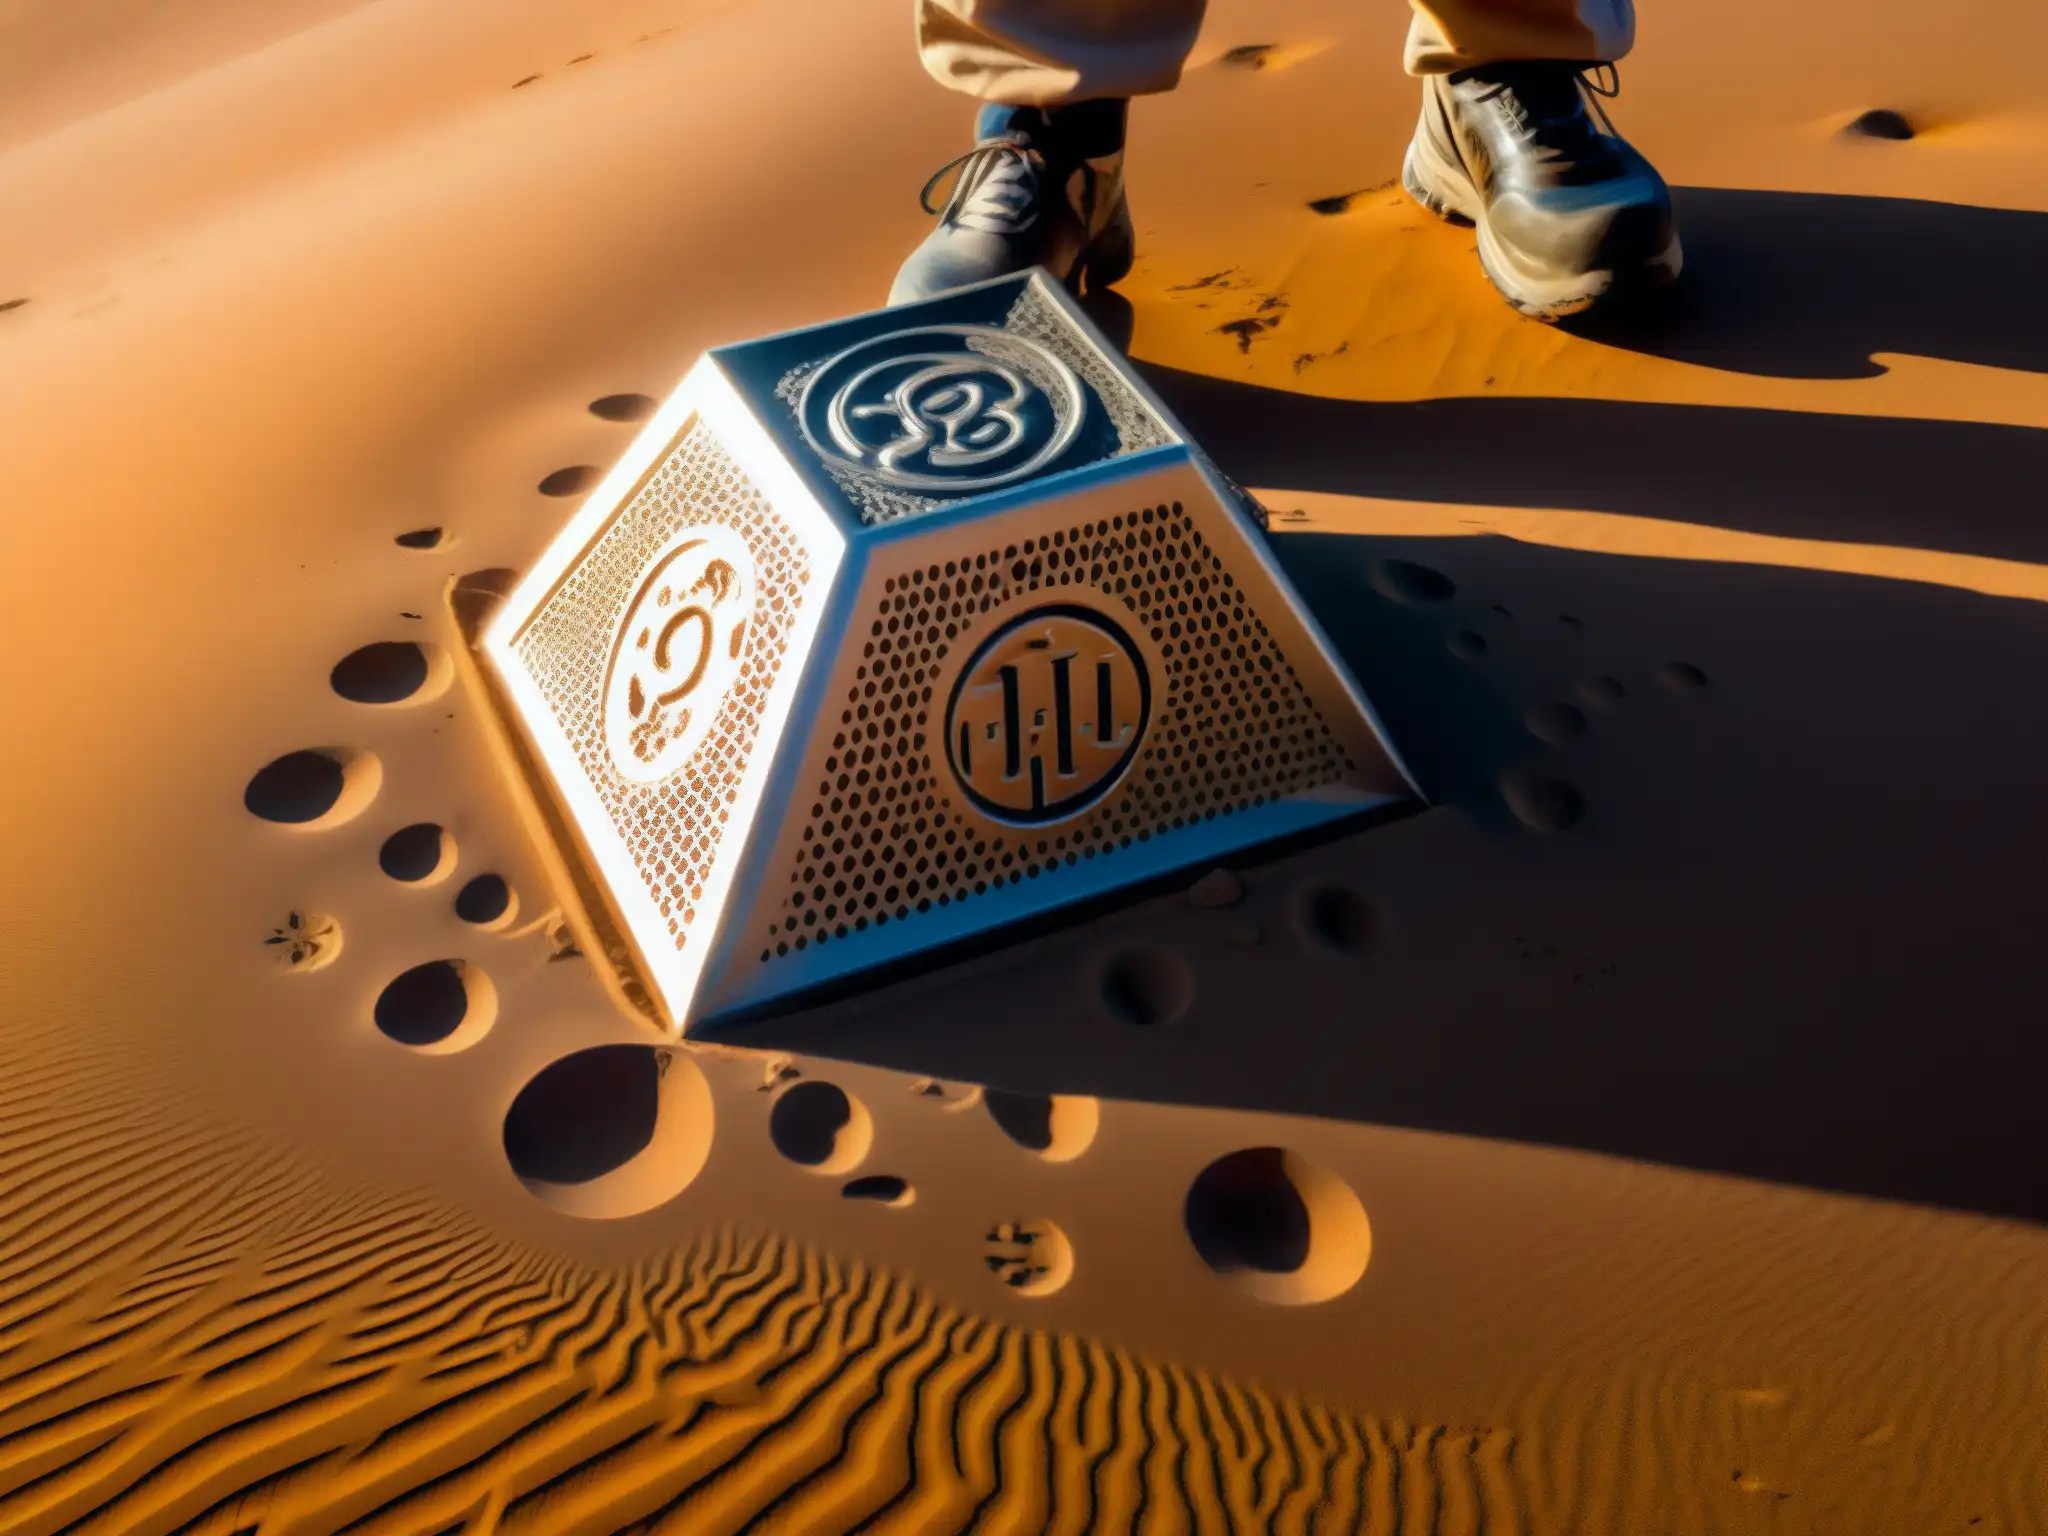 Un misterioso objeto metálico enterrado en la arena del desierto, rodeado de investigadores con trajes protectores